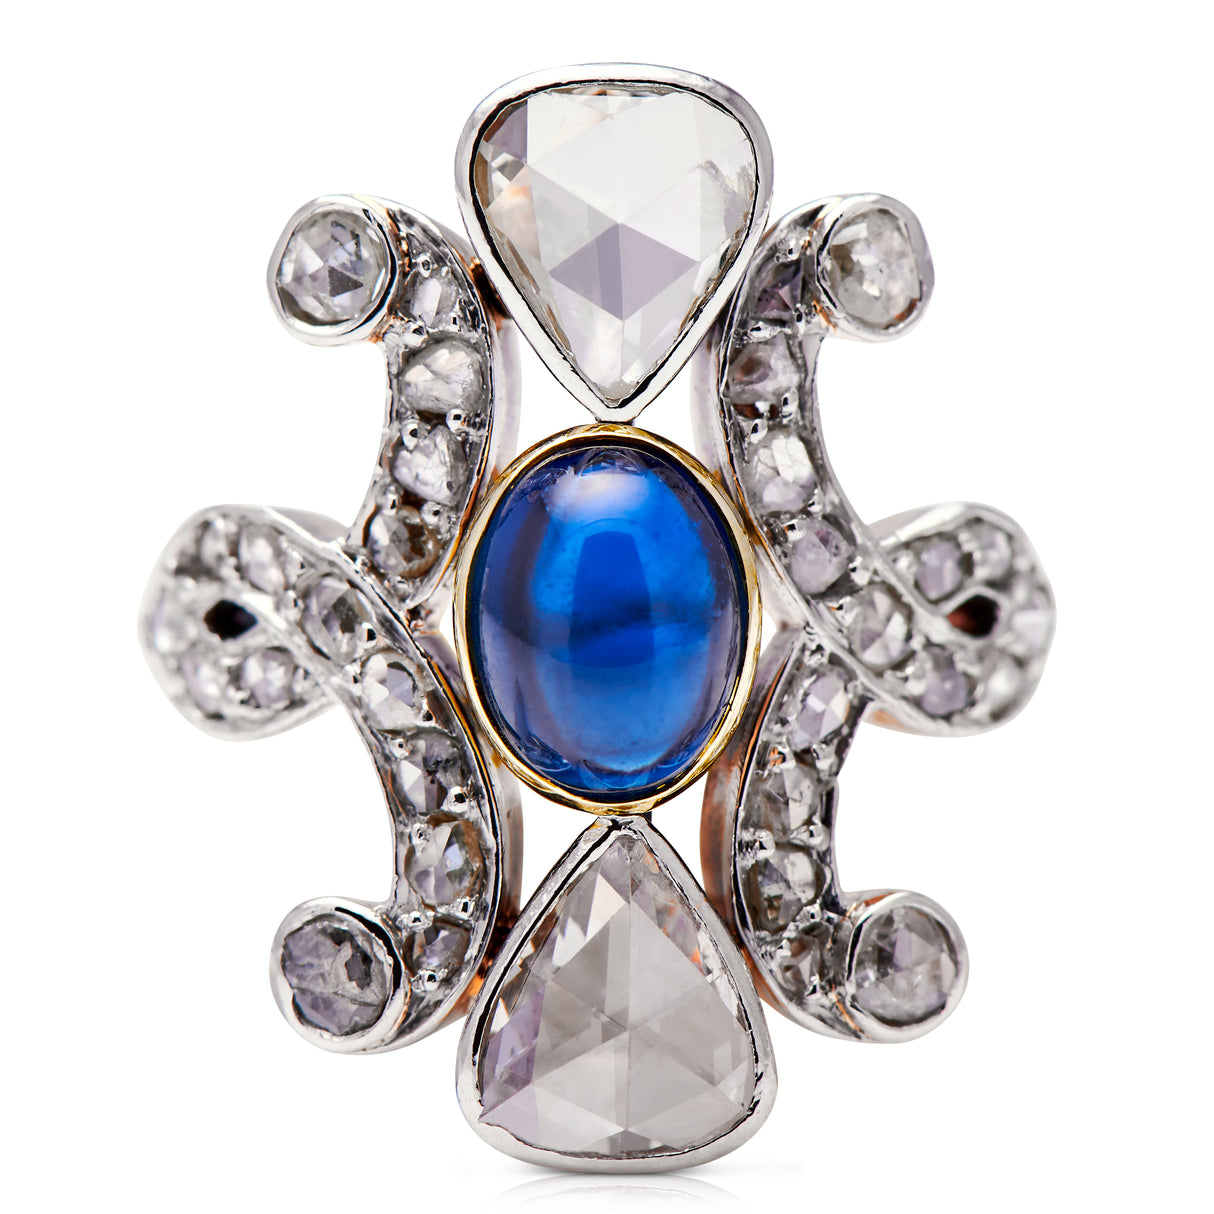 Belle-Époque-18-Carat-Gold-Cabochon-Sapphire-Rose-Cut-Ring-Diamond-Antique-Vintage